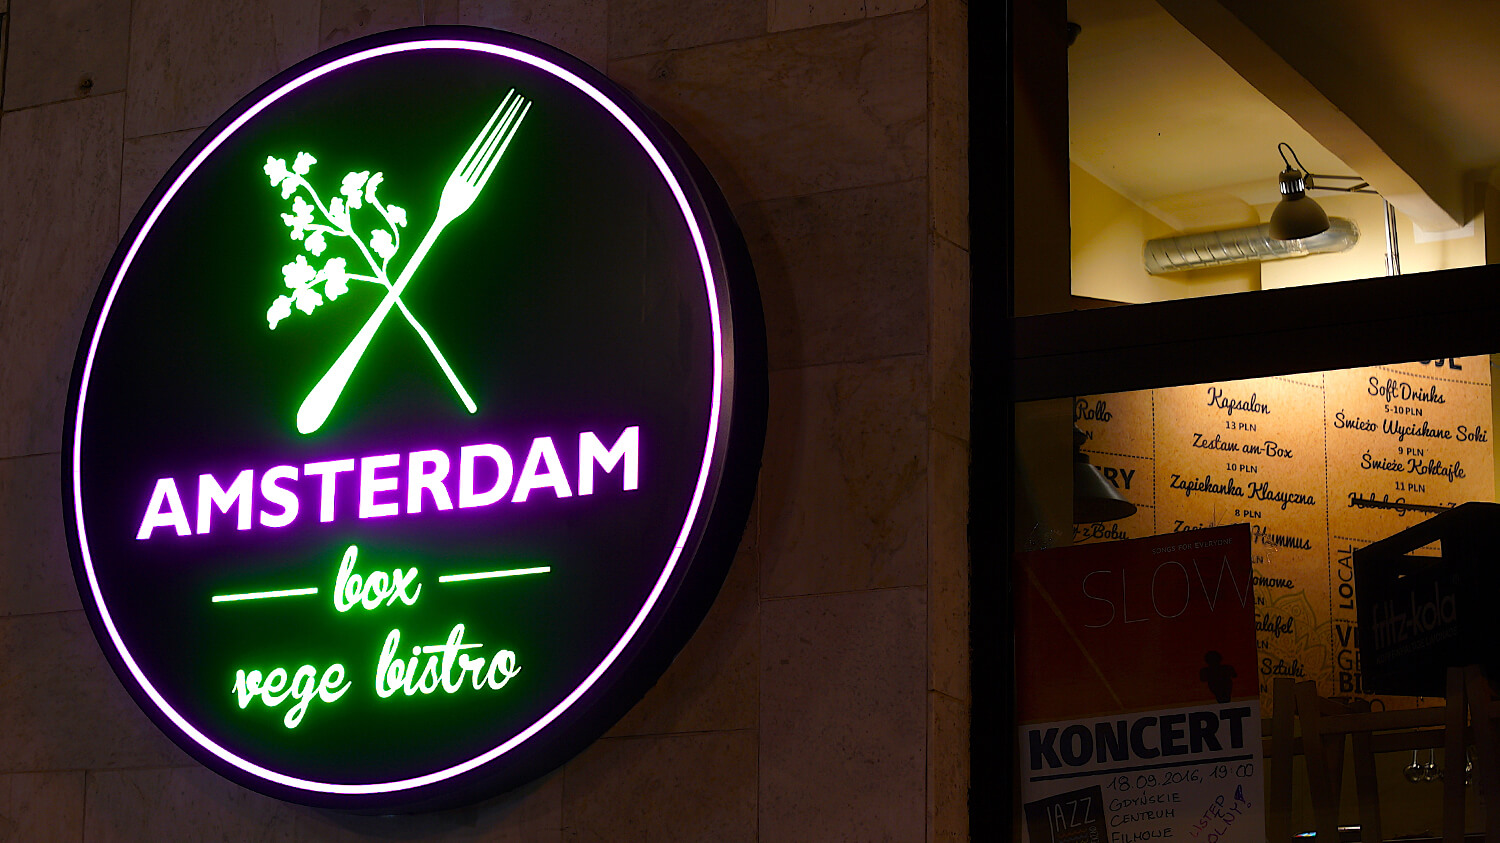 Amsterdam - Amsterdam Box - pannello rotondo illuminato a LED